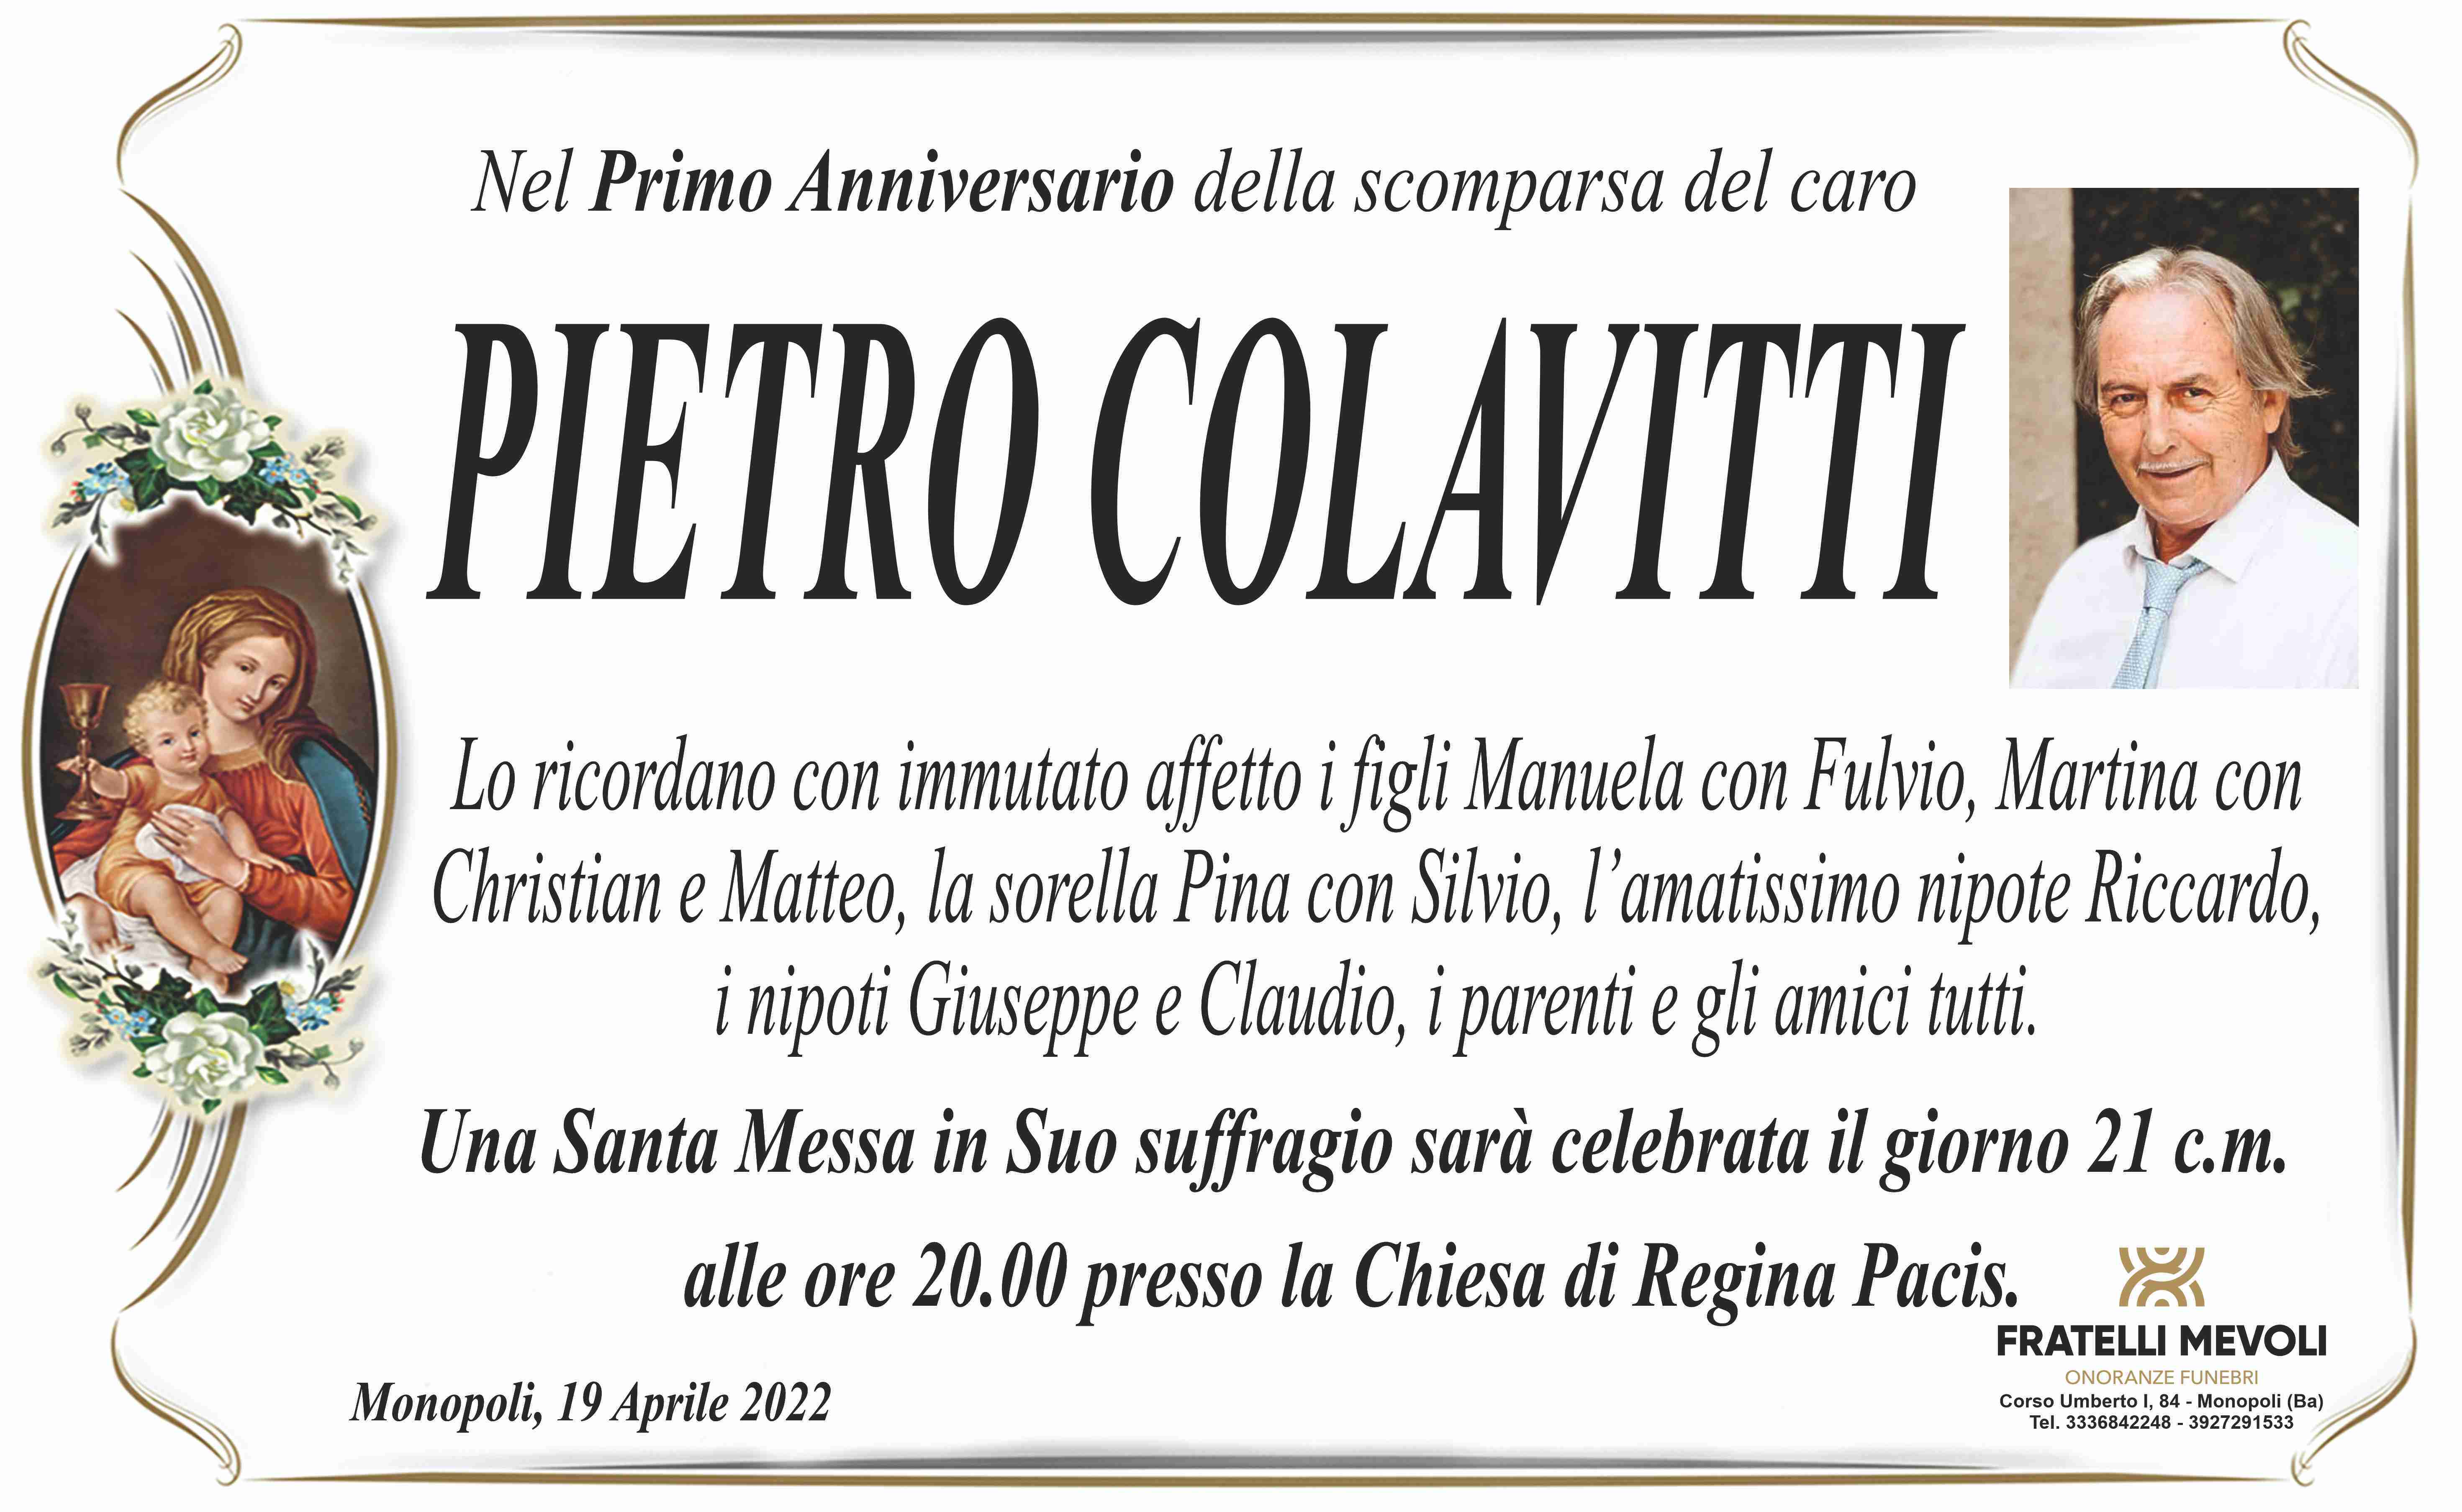 Pietro Colavitti